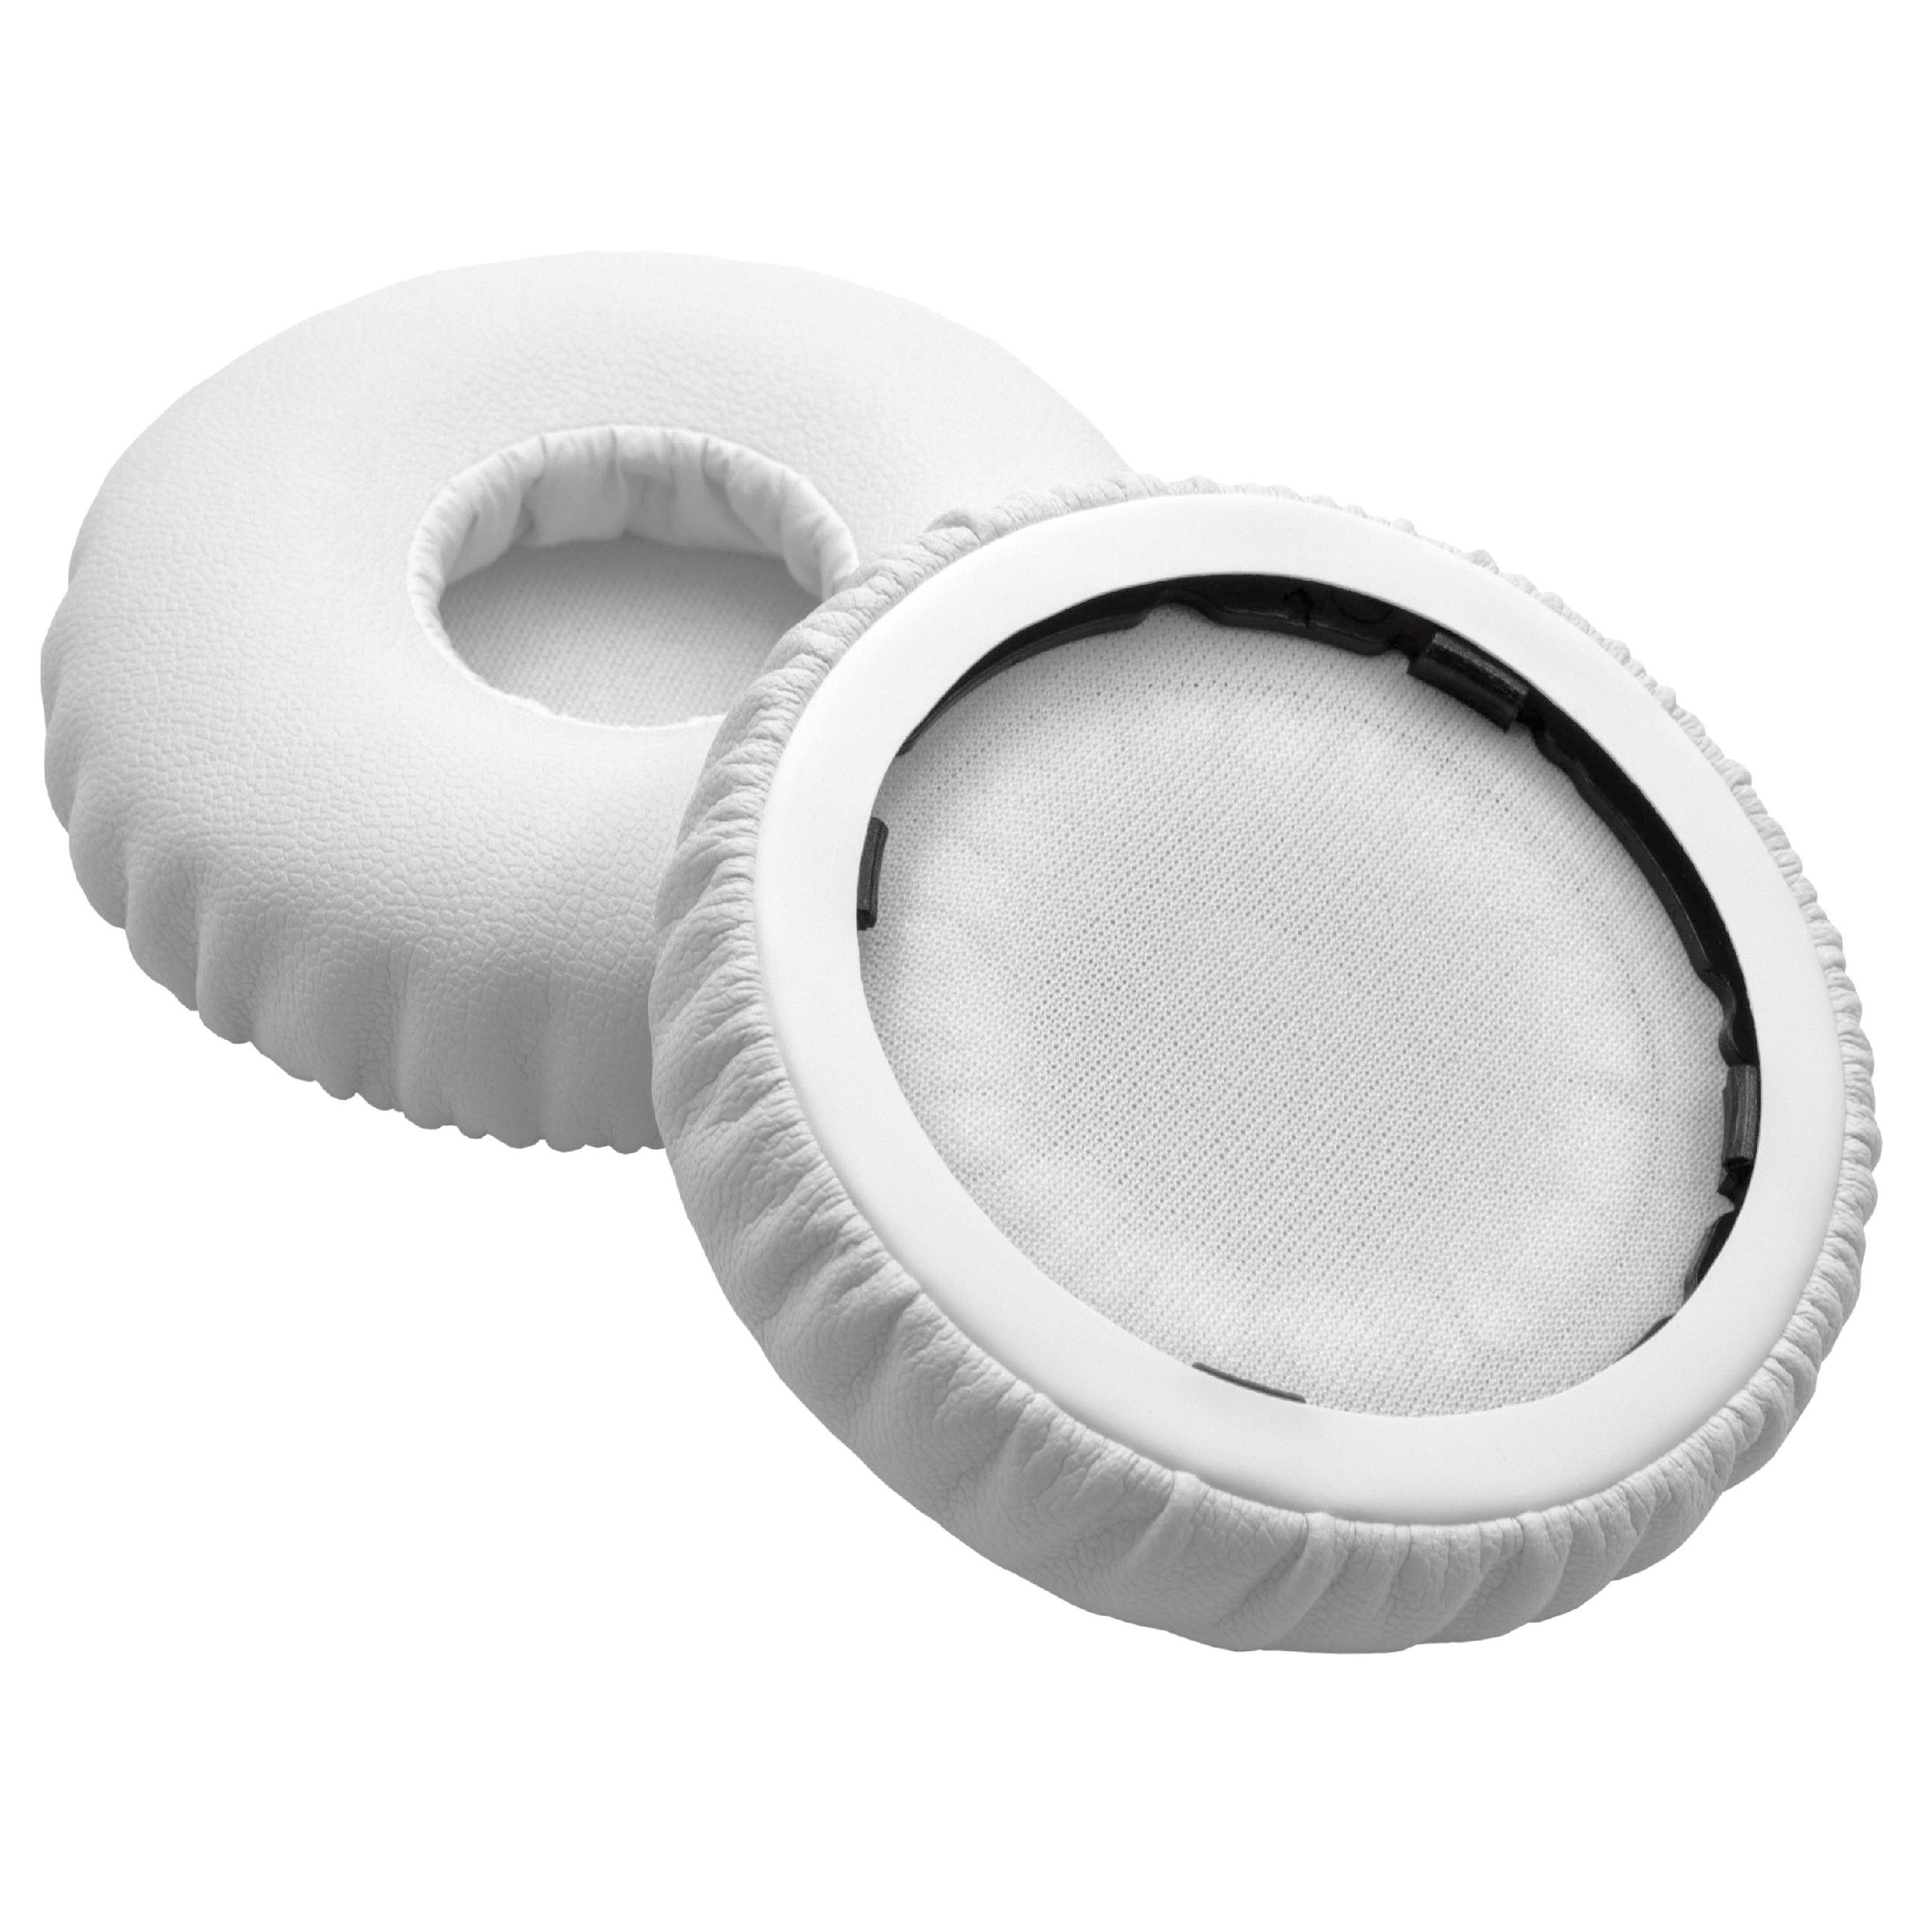 2x 1 paio di cuscinetti per Beats by Dr. Dre Solo cuffie ecc. - poliuretano, 6,6 cm diametro esterno, 14 mm sp